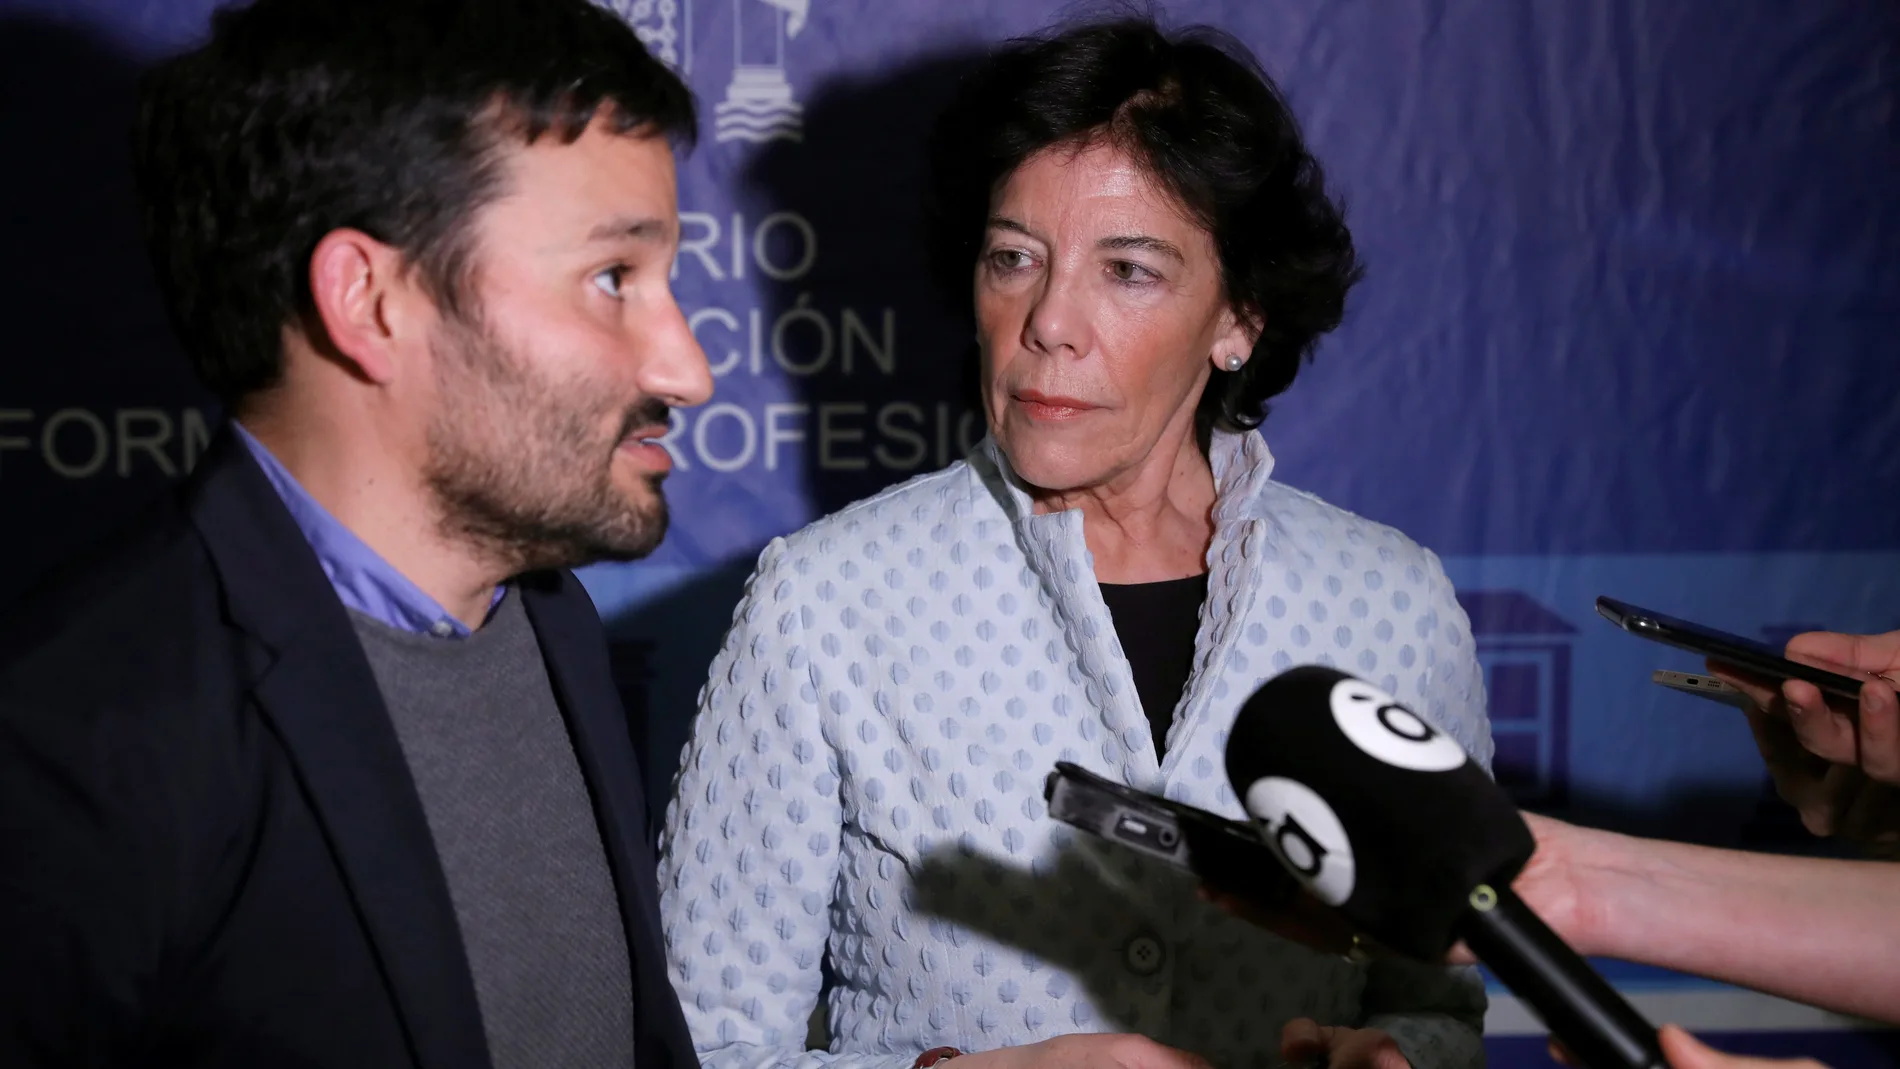 La ministra de Educación Isabel Celaá se reúne con el consejero de Educación valenciano Vicent Marzá